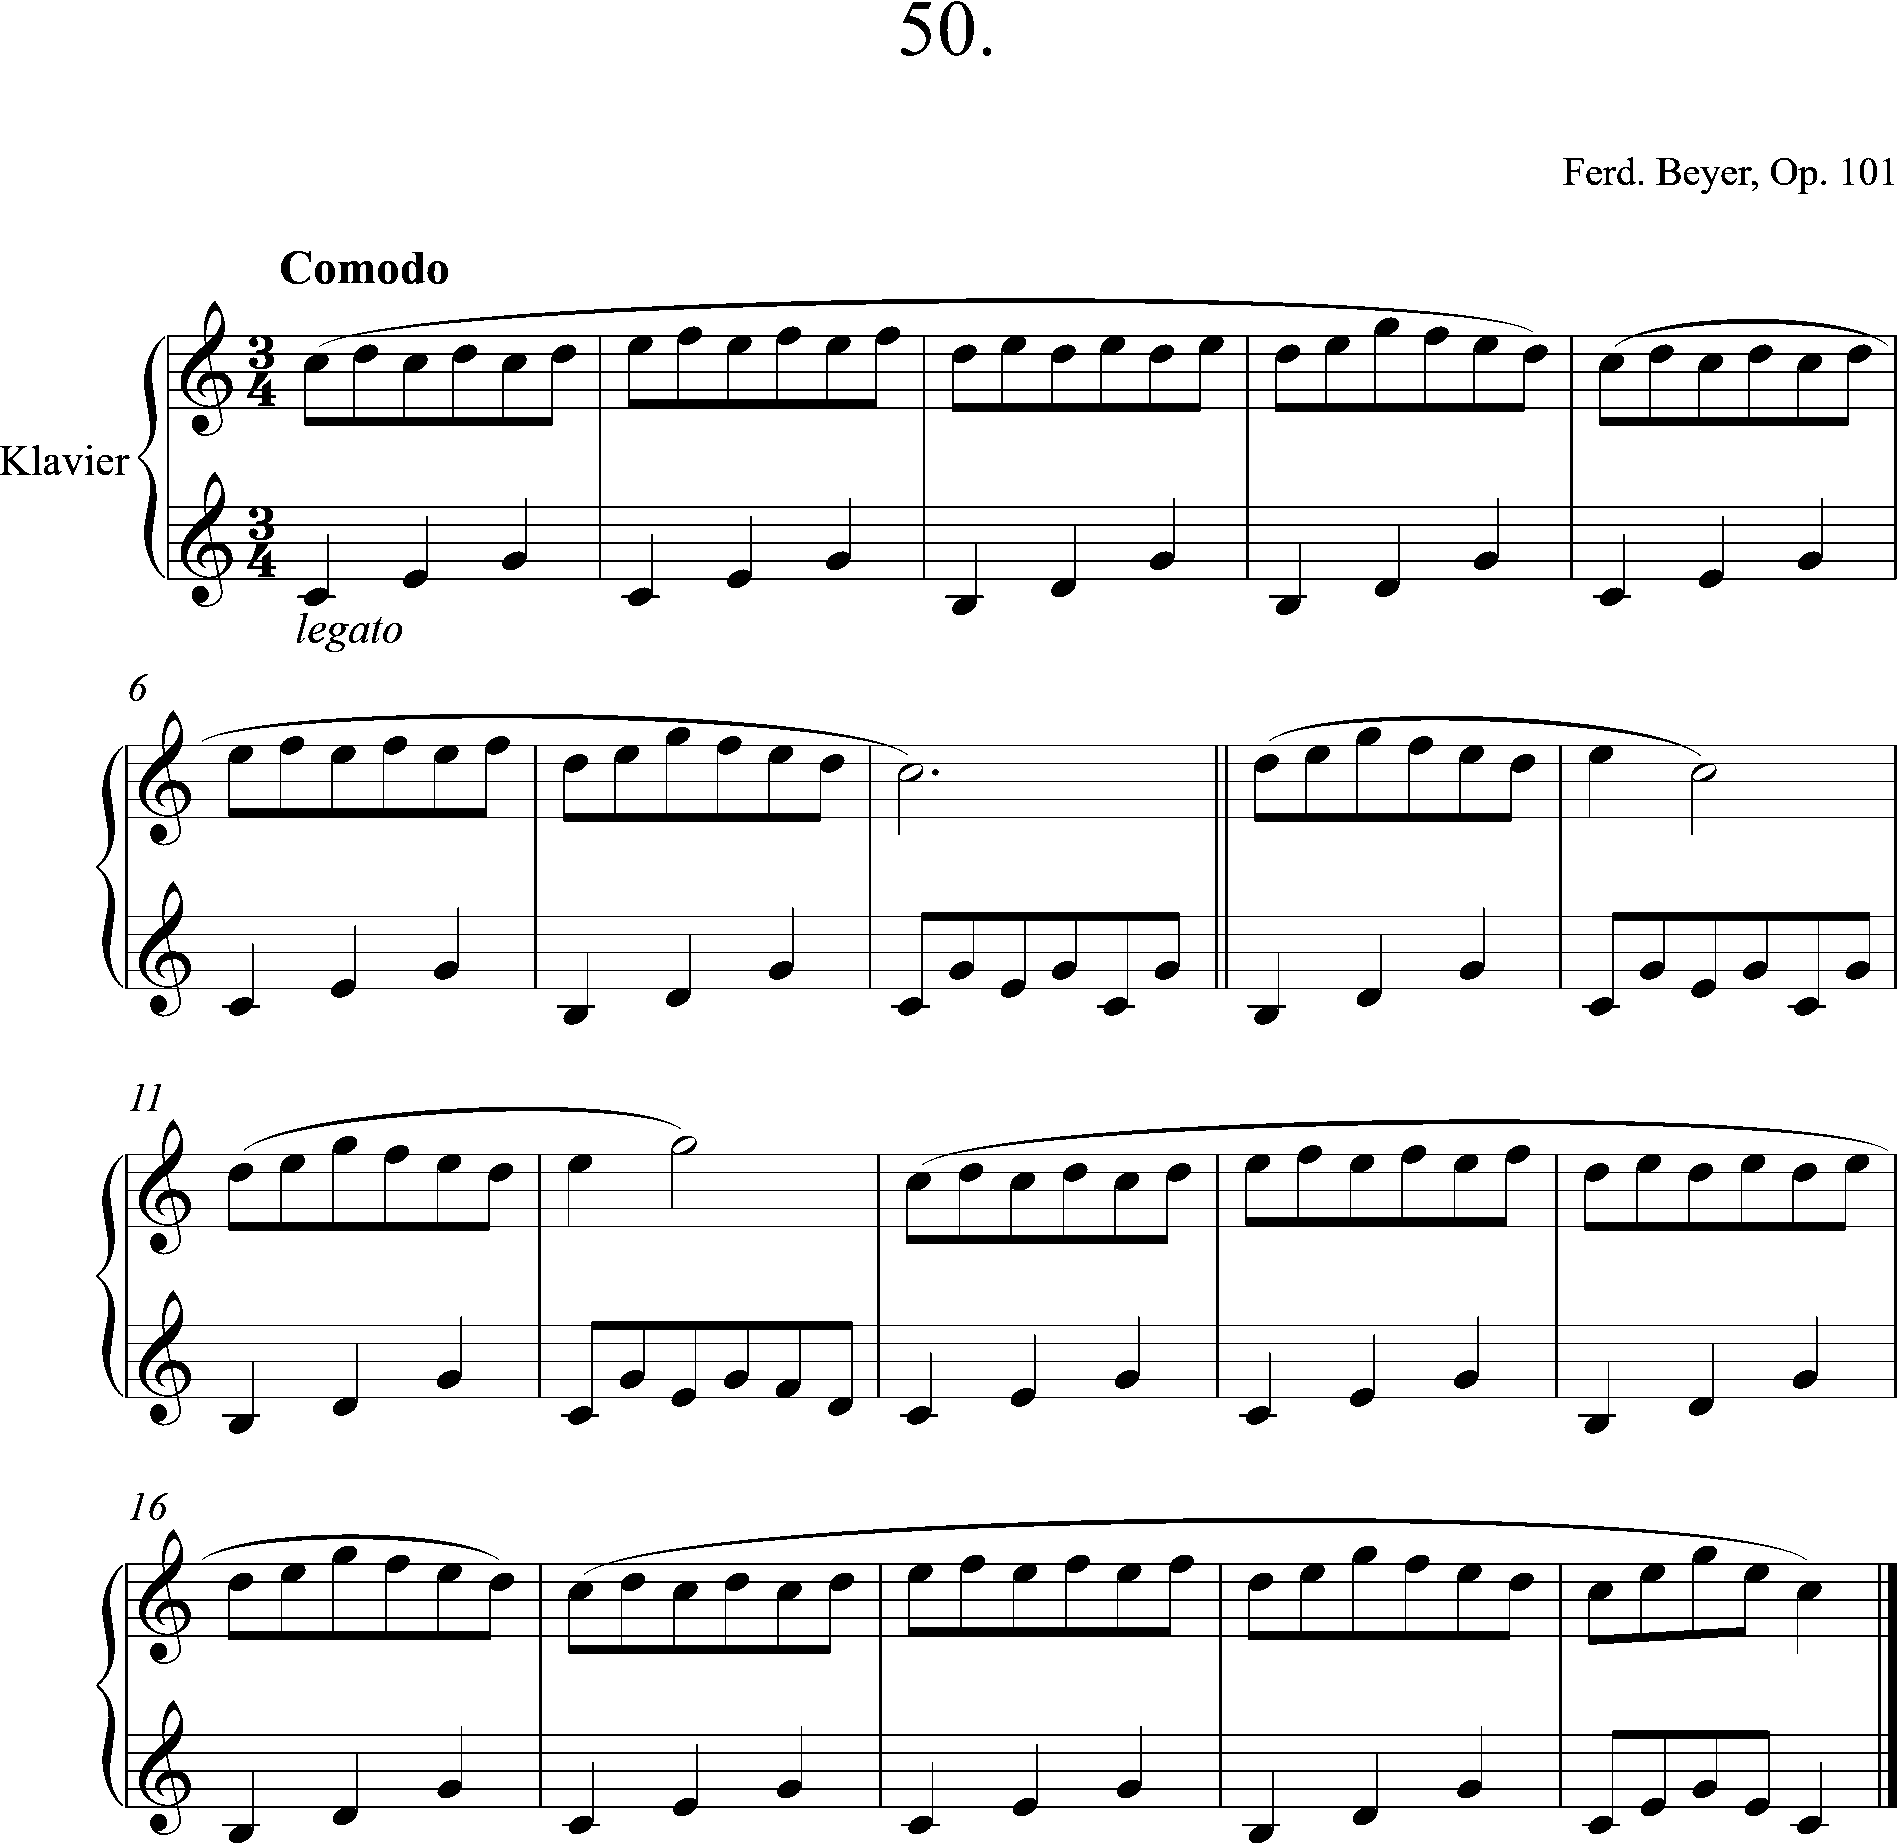 klavierschule, Beyer, op. 101, No. 50